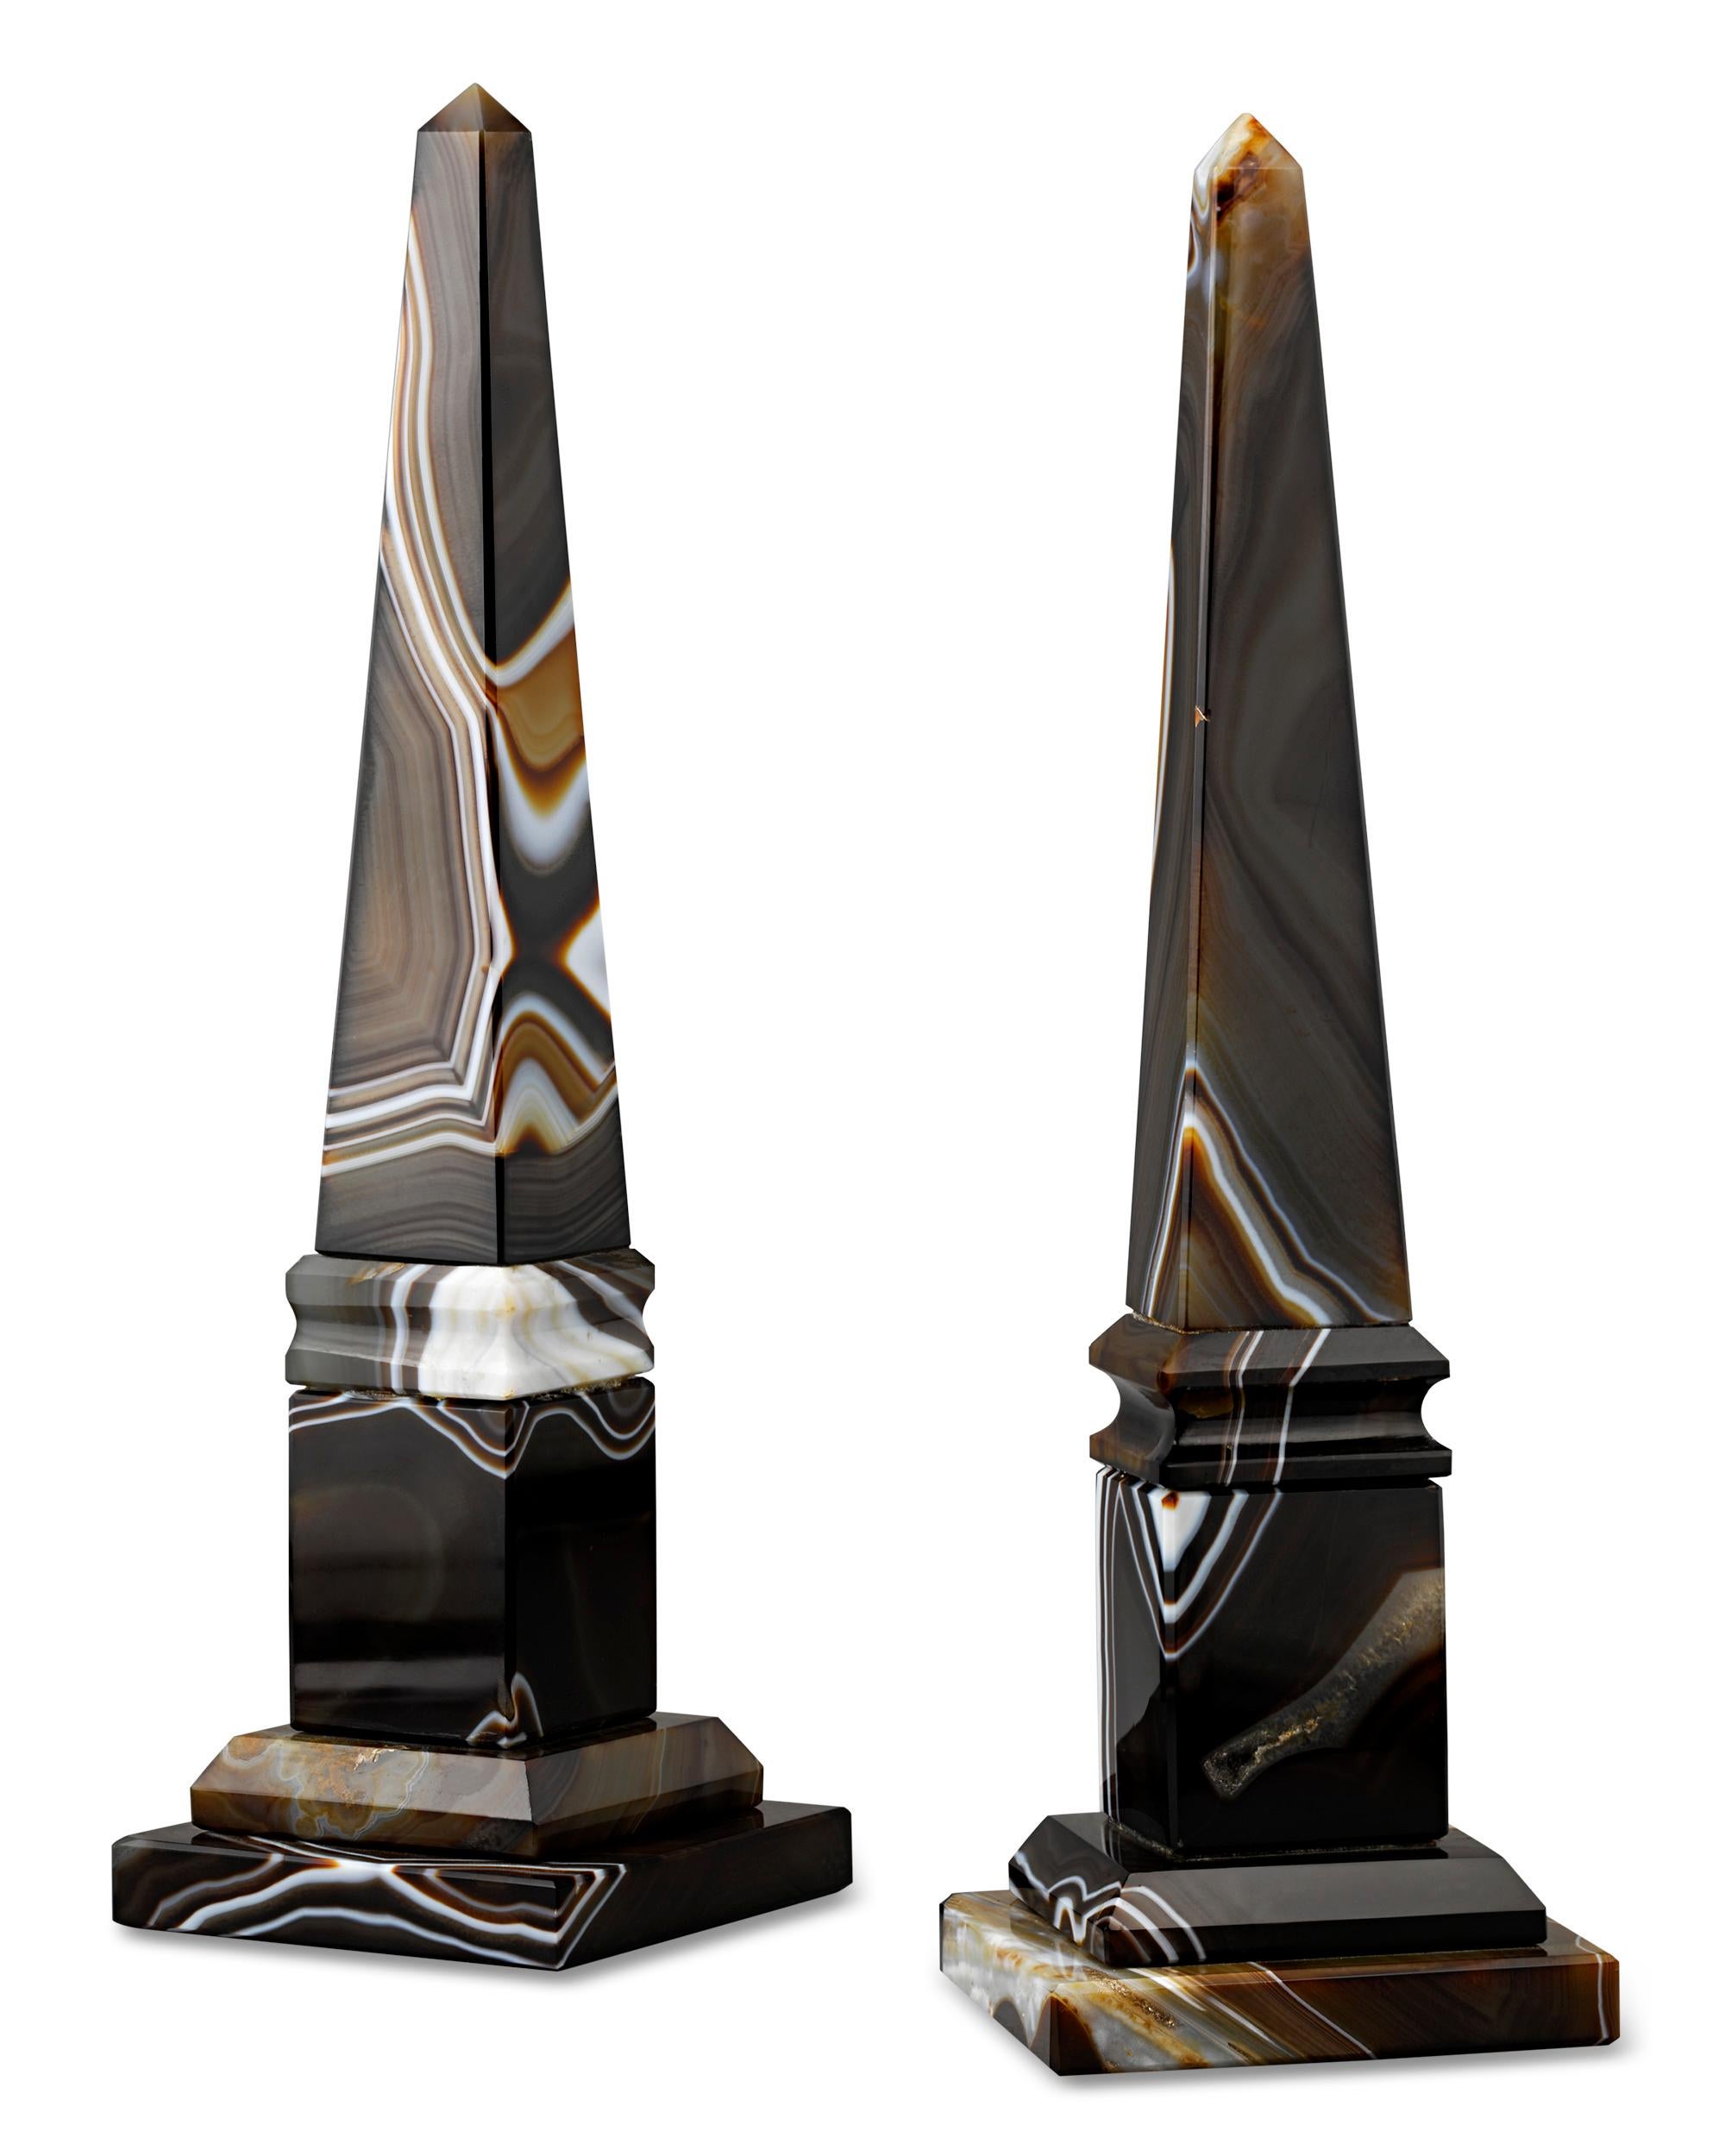 Diese beeindruckenden Obelisken der Ägyptischen Wiedergeburt sind aus dynamisch gemustertem Achat gefertigt. Die seltenen Modelle aus dem 19. Jahrhundert wurden höchstwahrscheinlich in Italien auf dem Höhepunkt der Grand Tour hergestellt, als die